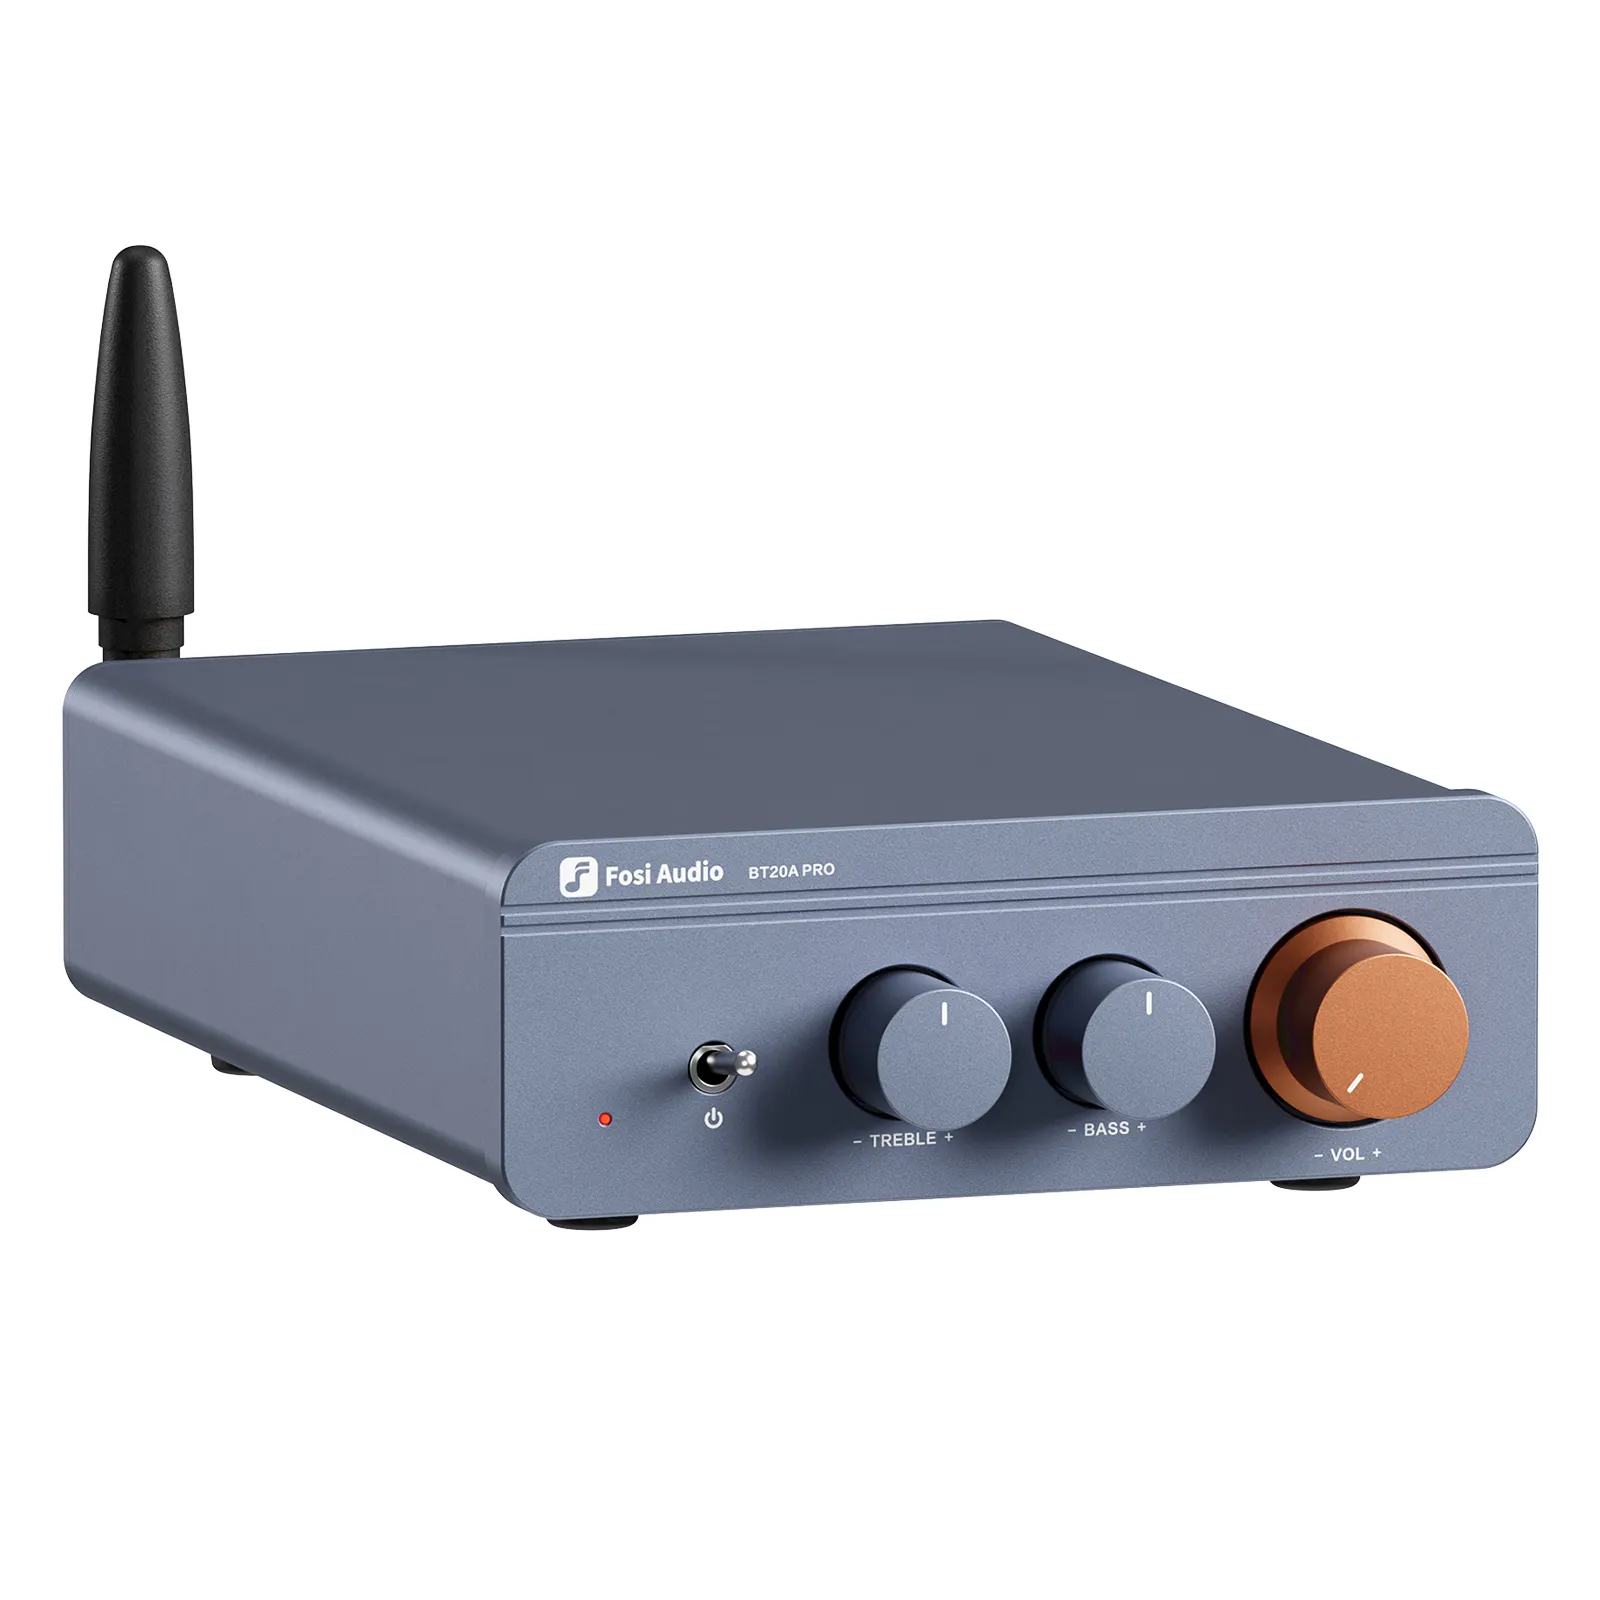 Fosi Audio BT20A Pro TPA3255, صوت أزرق ، 300 واط ، X2 ، Mini HiFi ، ستيريو ، فئة D ، جهير ، تريبل ، للمسرح المنزلي CB